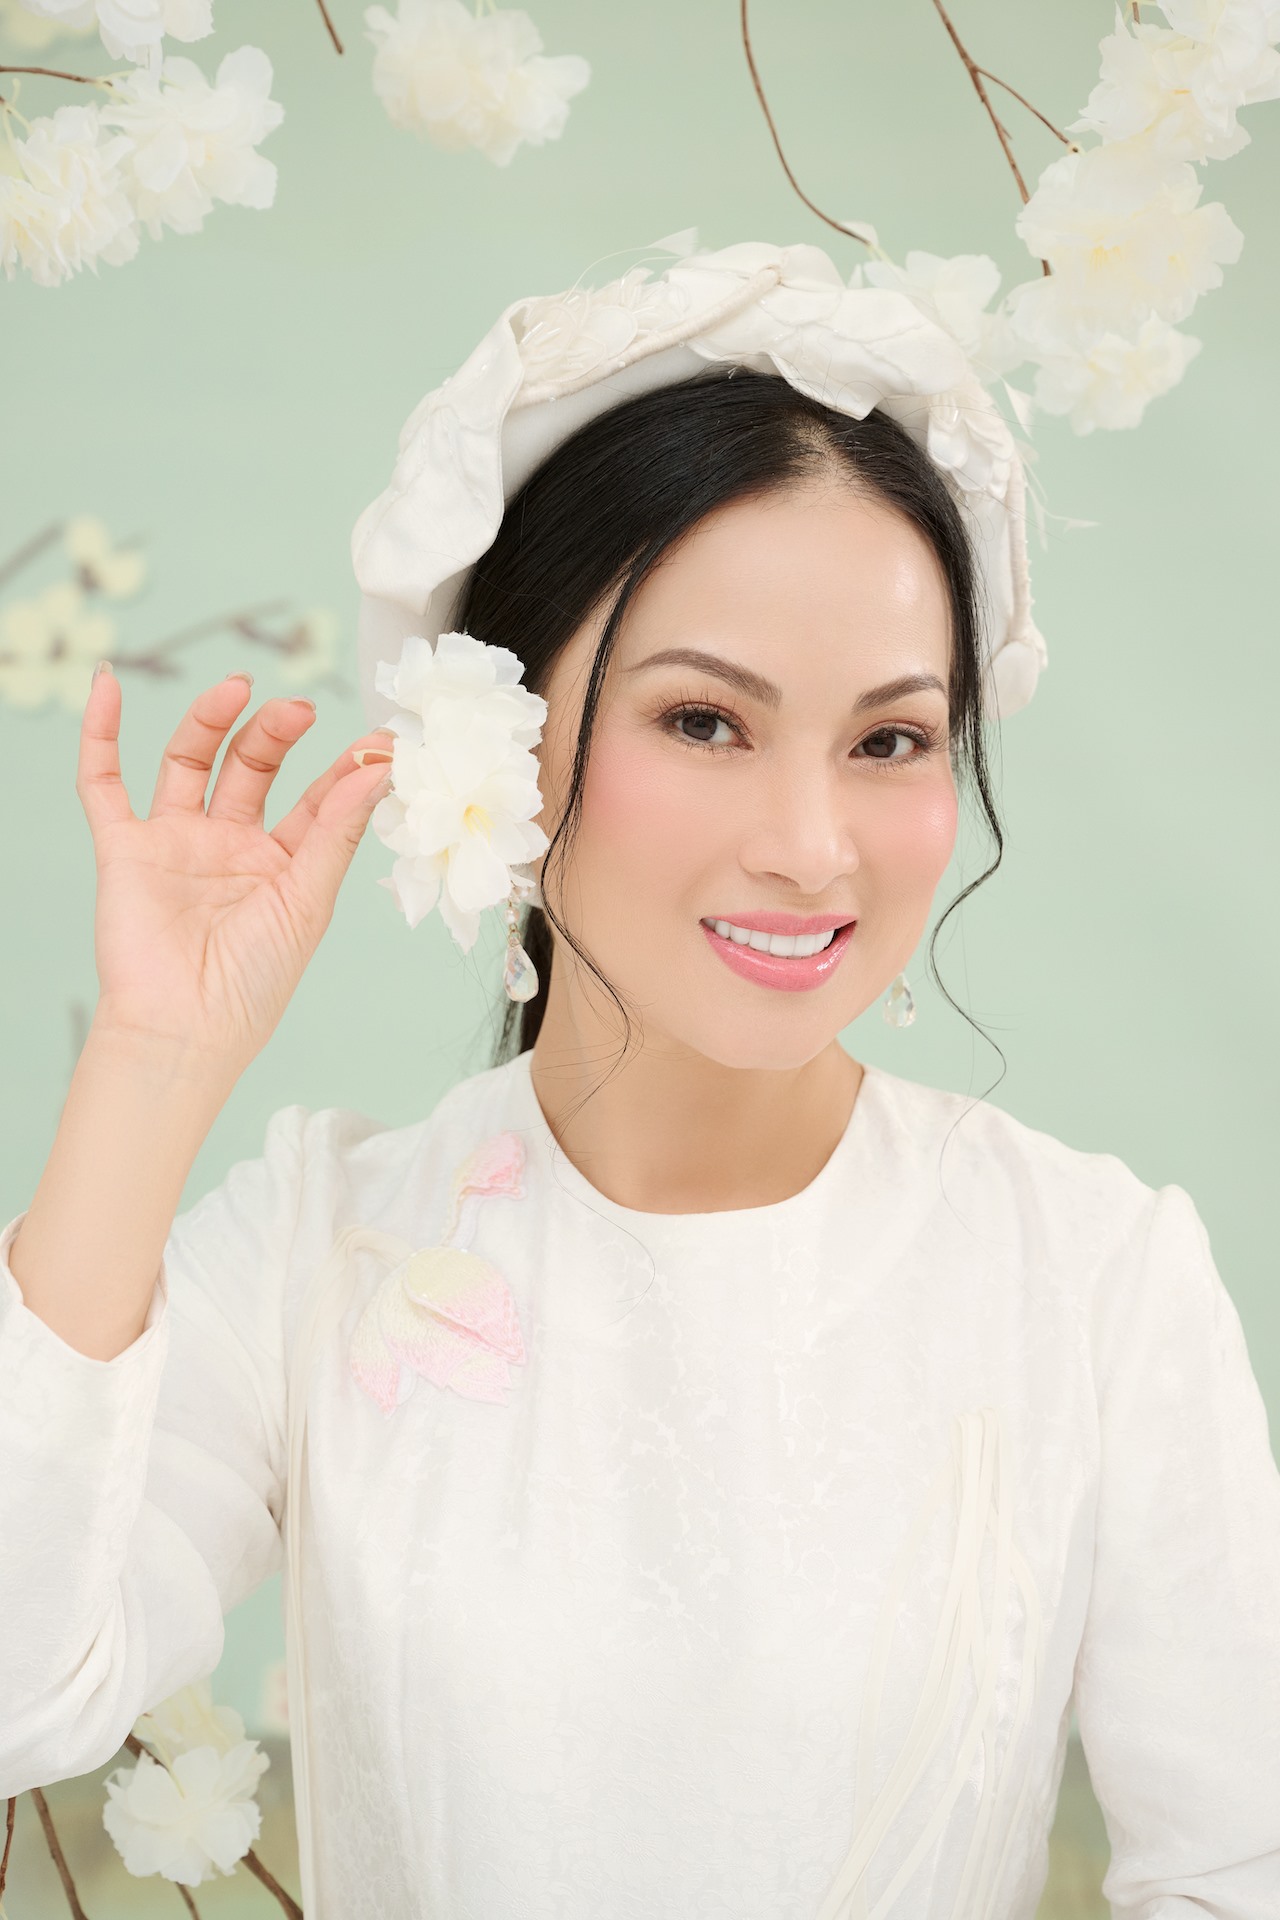 Trong bộ ảnh, Hà Phương lựa chọn những bộ áo dài truyền thống với tone màu trắng với thiết kế đơn giản nhất. Trong trang phục áo dài, nữ ca sĩ khoe trọn vóc dáng thon gọn đáng ngưỡng mộ với vòng eo “con kiến” và sự thanh khiết, dịu dàng.